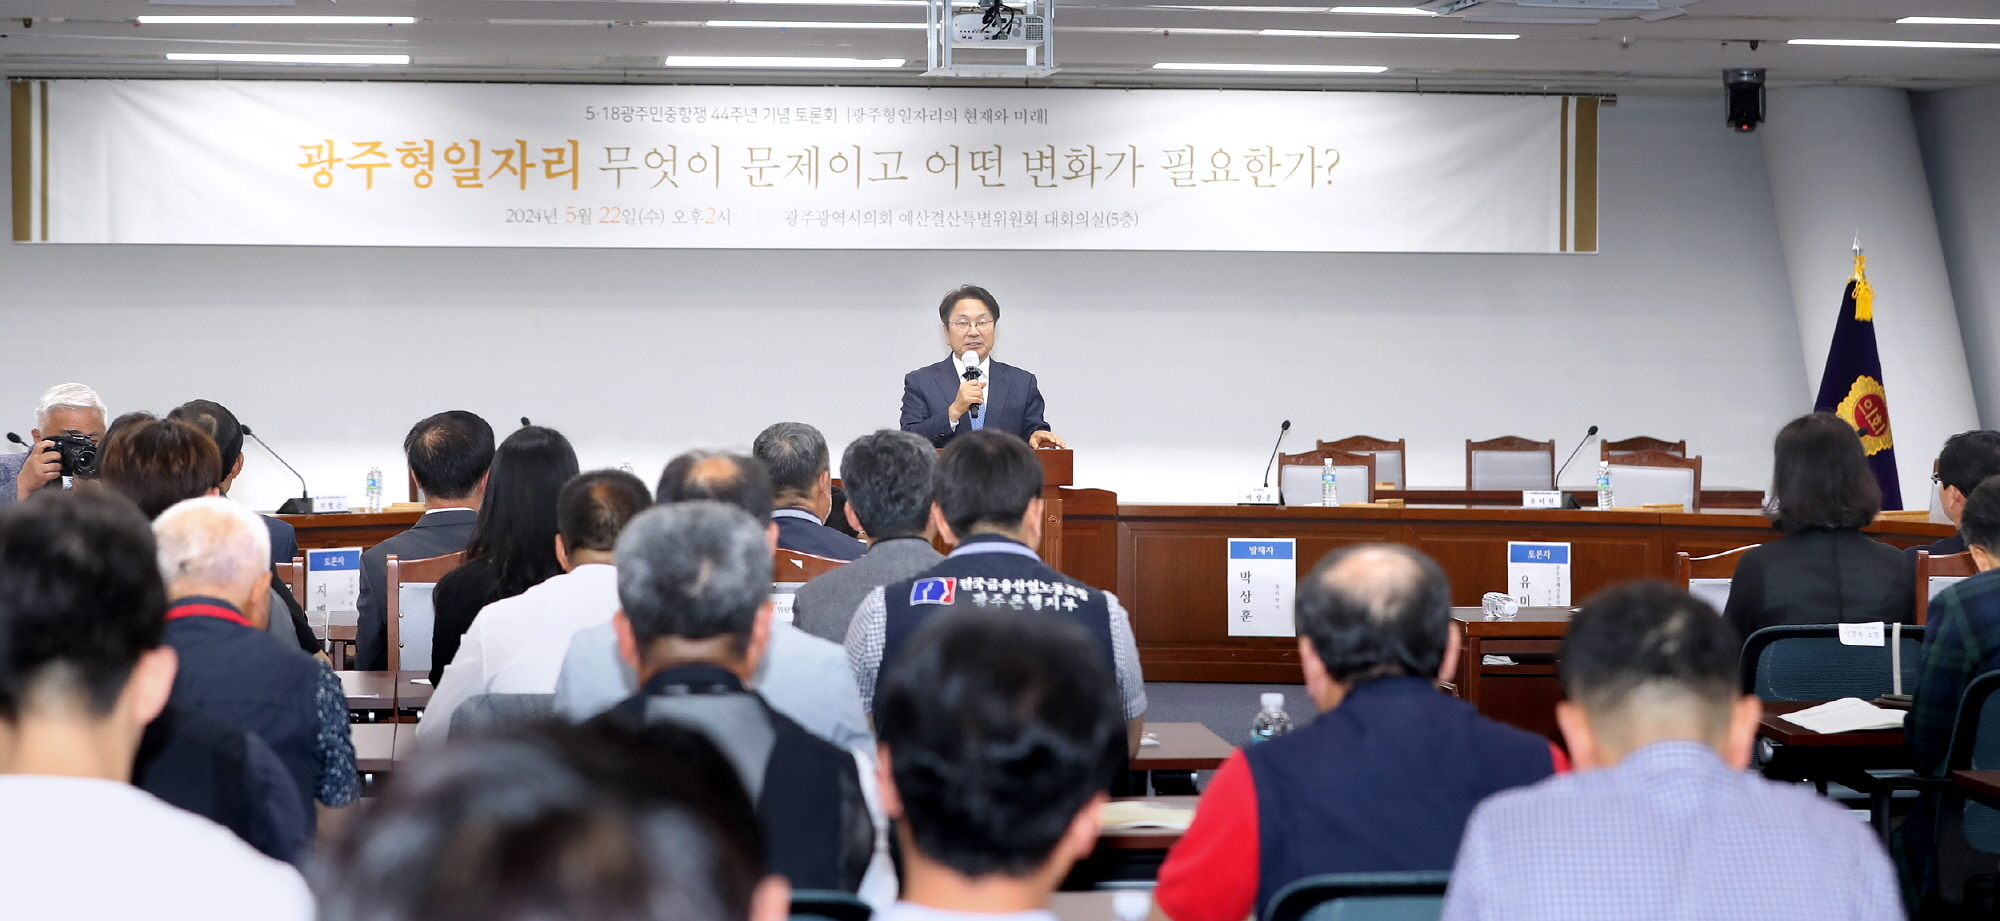 광주형 일자리의 발전방향을 모색하기 위한 토론회가 22일 광주시의회에서 열렸다. 광주광역시 제공